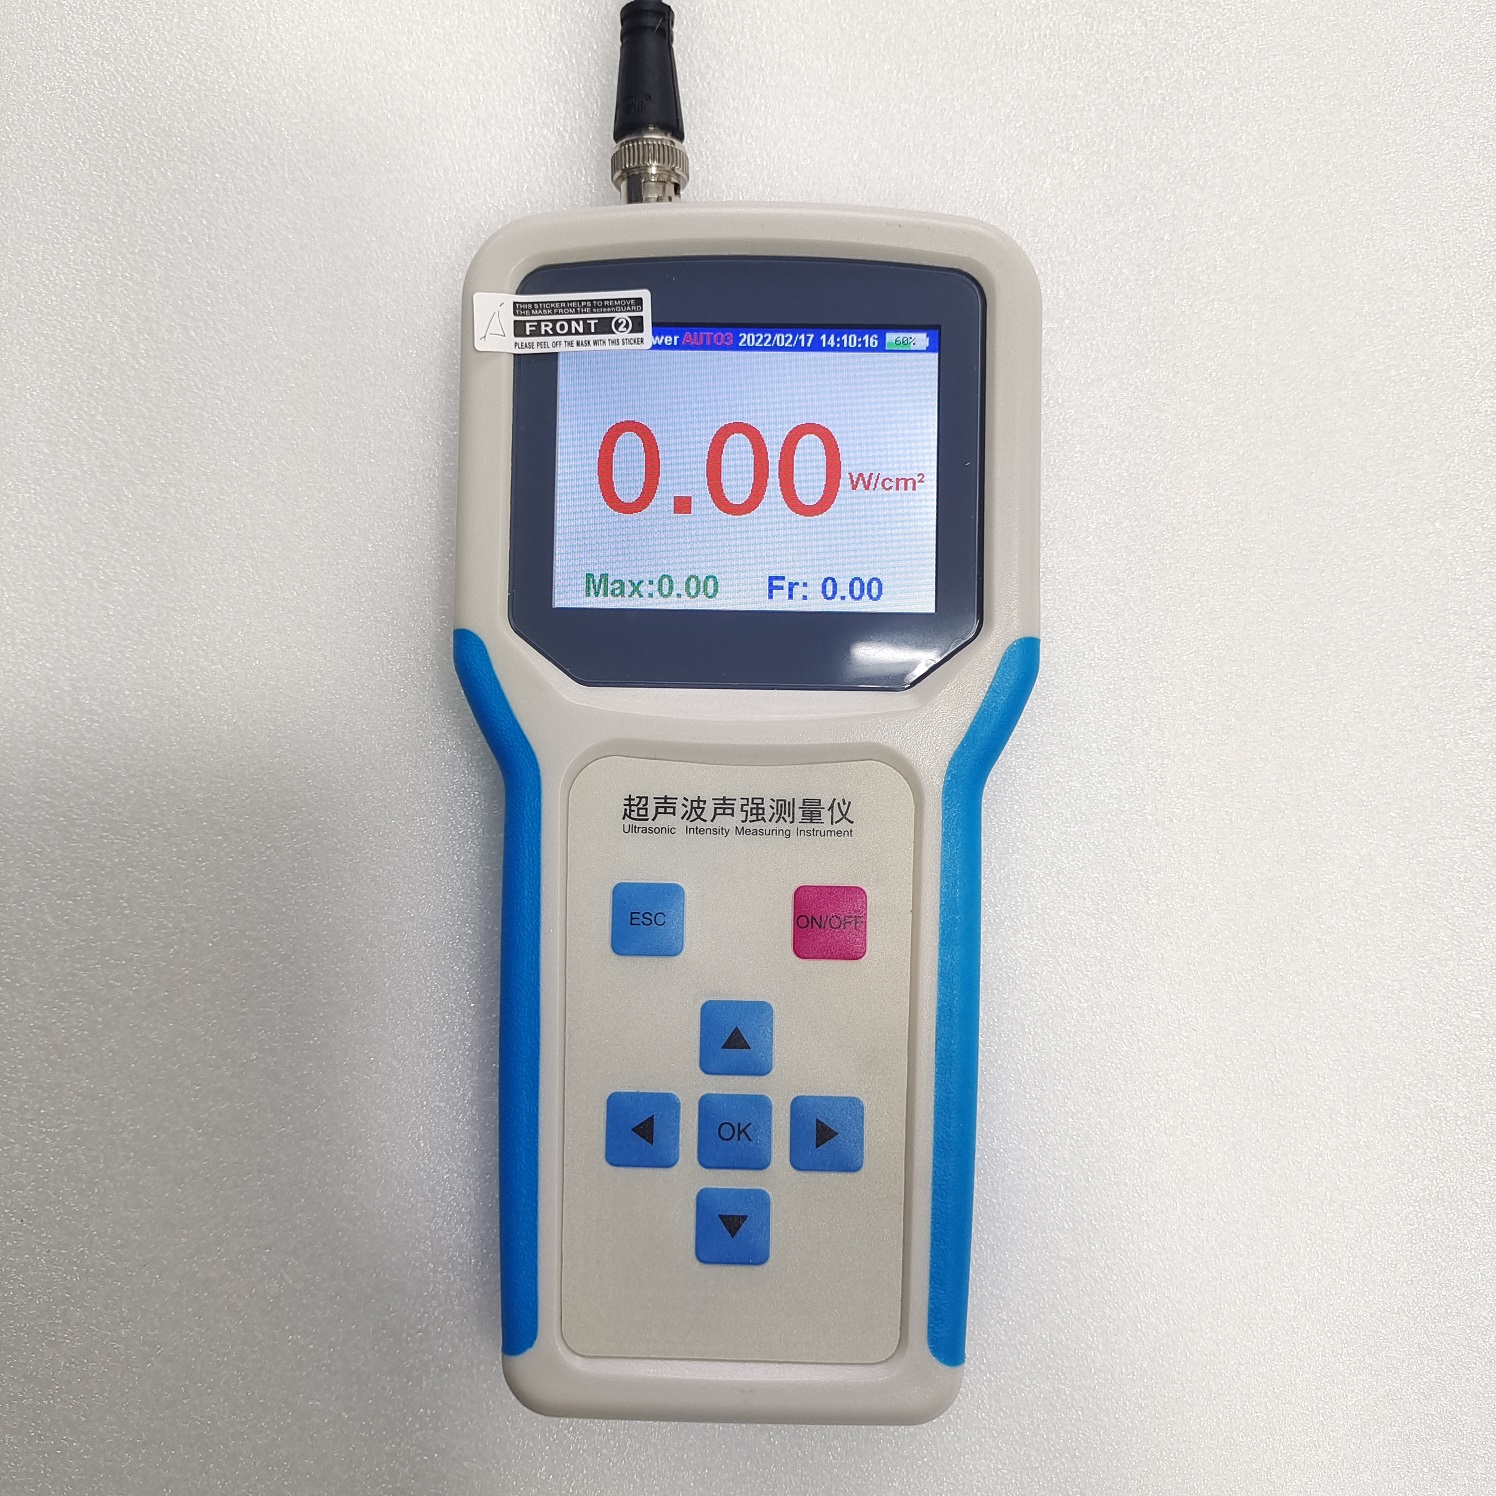 超声波声强测量仪 音压计 声压计